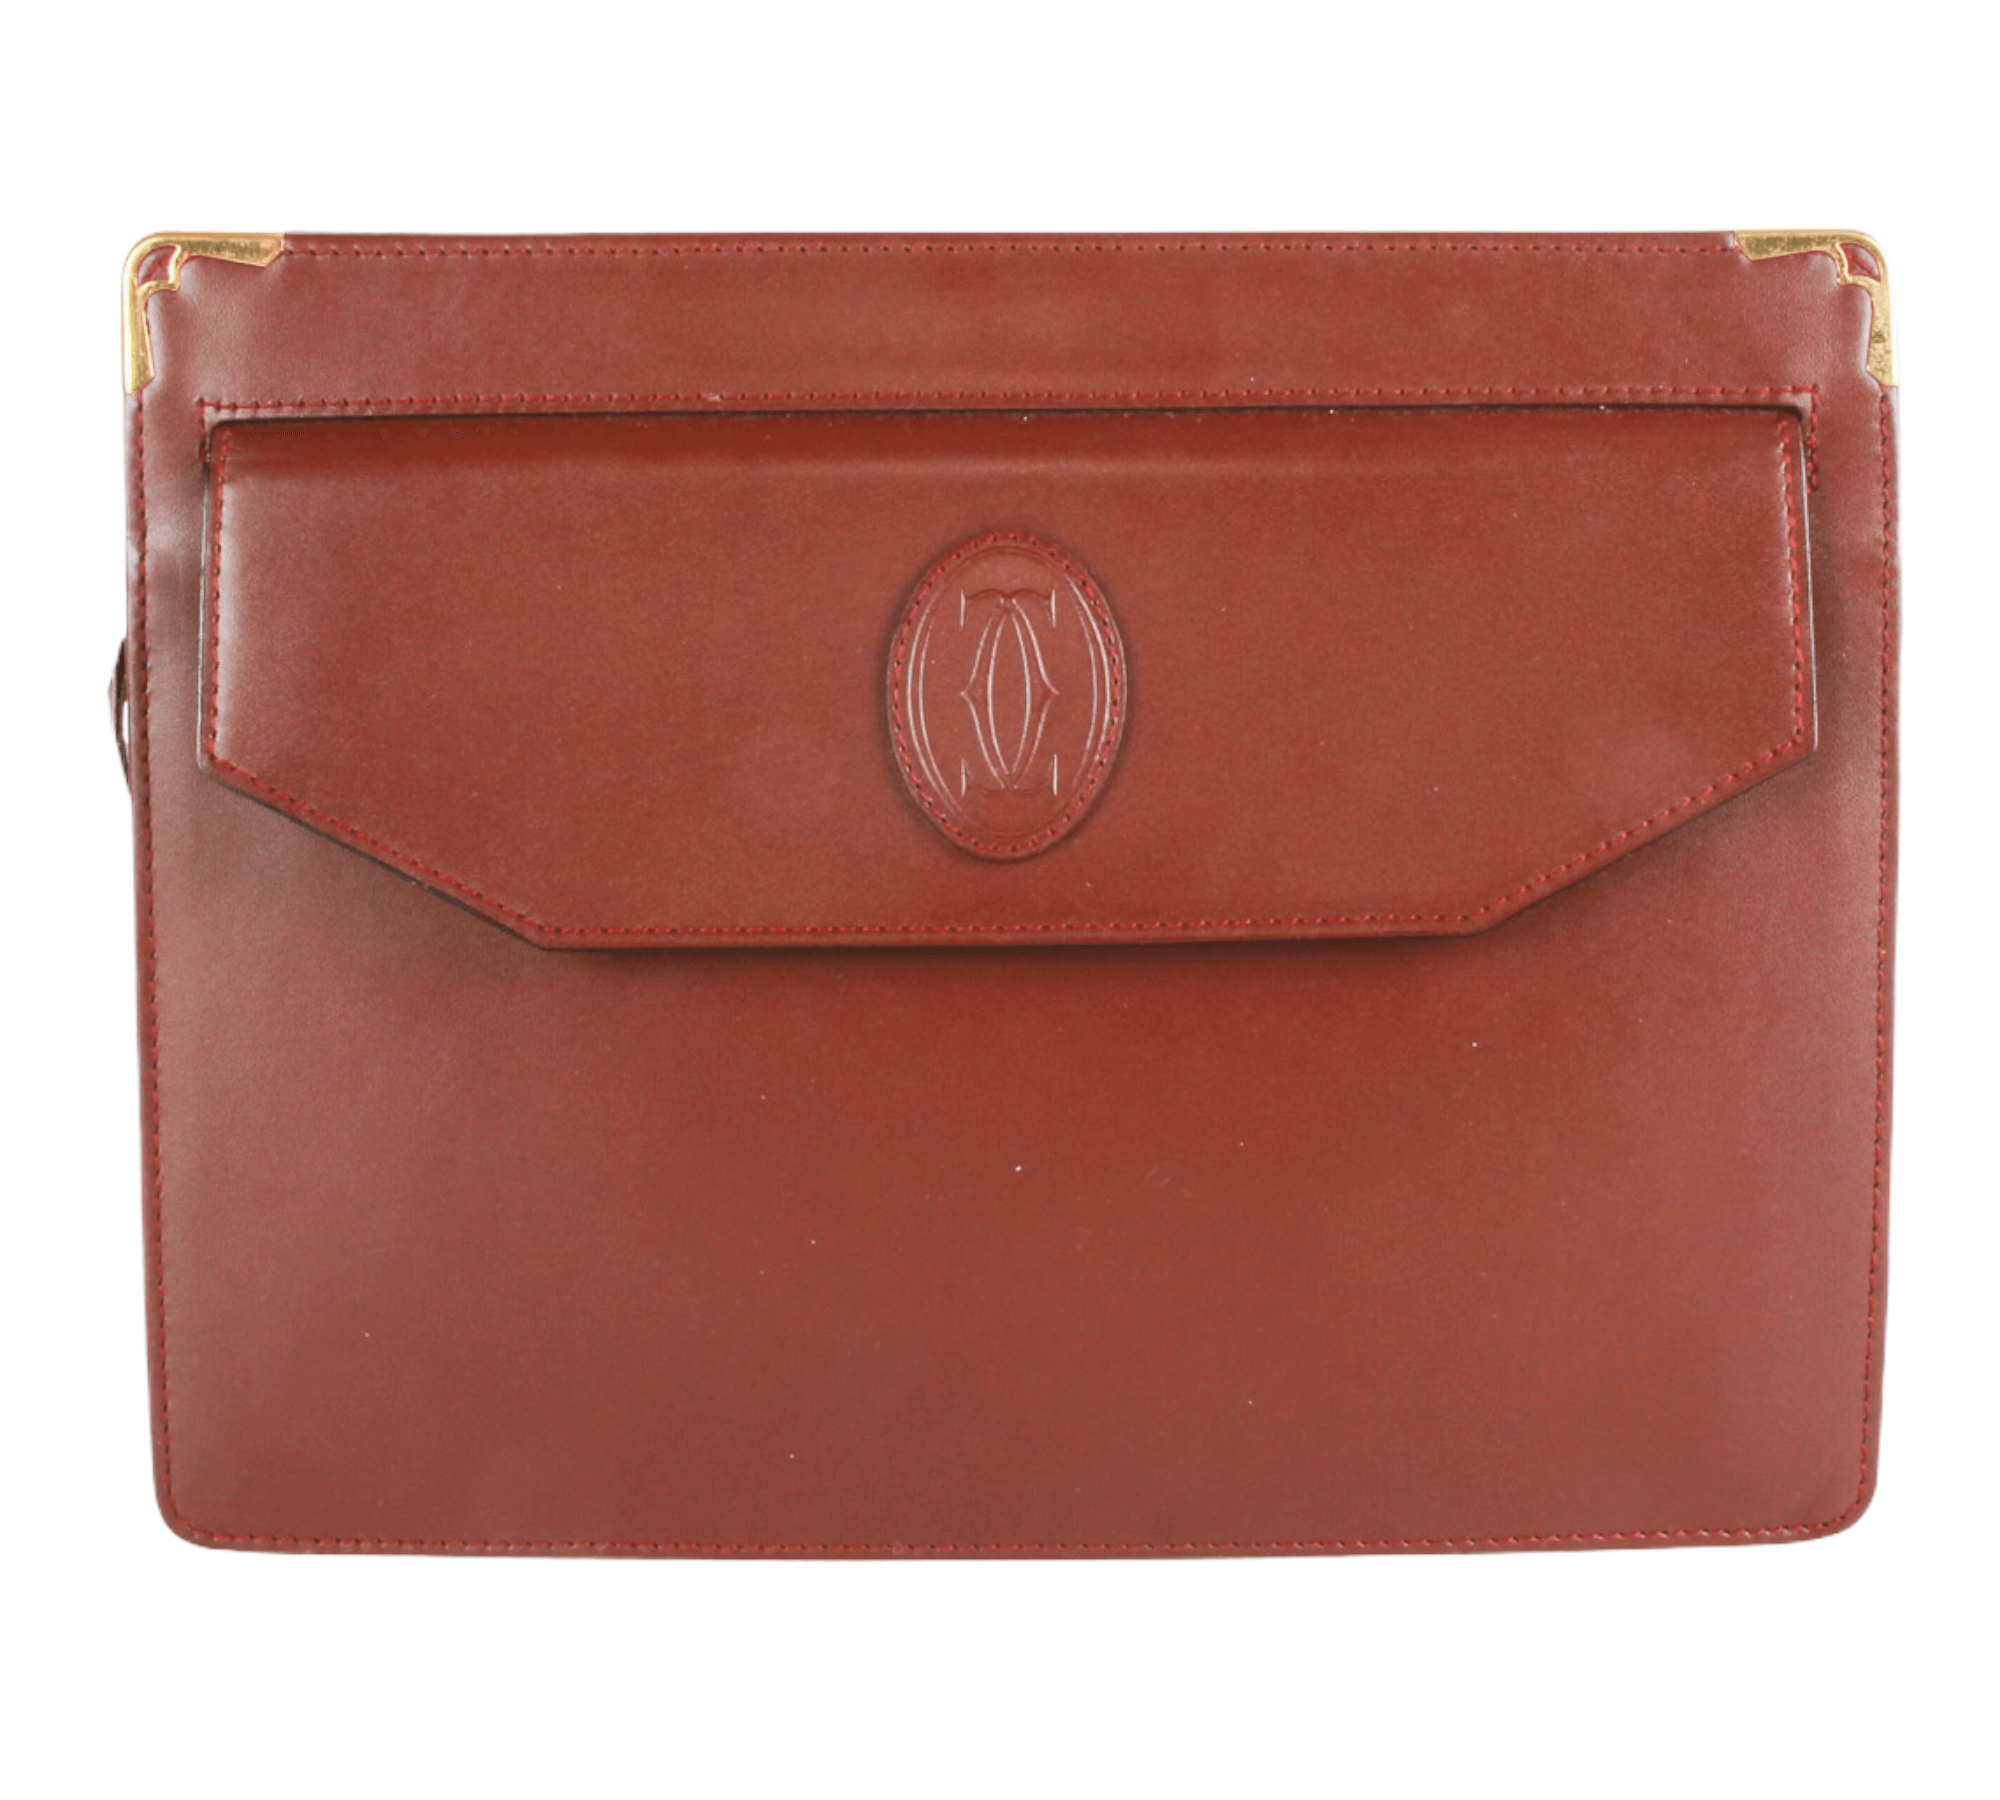 Cartier Bag, Must de Cartier Bag Red Leather. Authentic. Vintage 80s | eBay